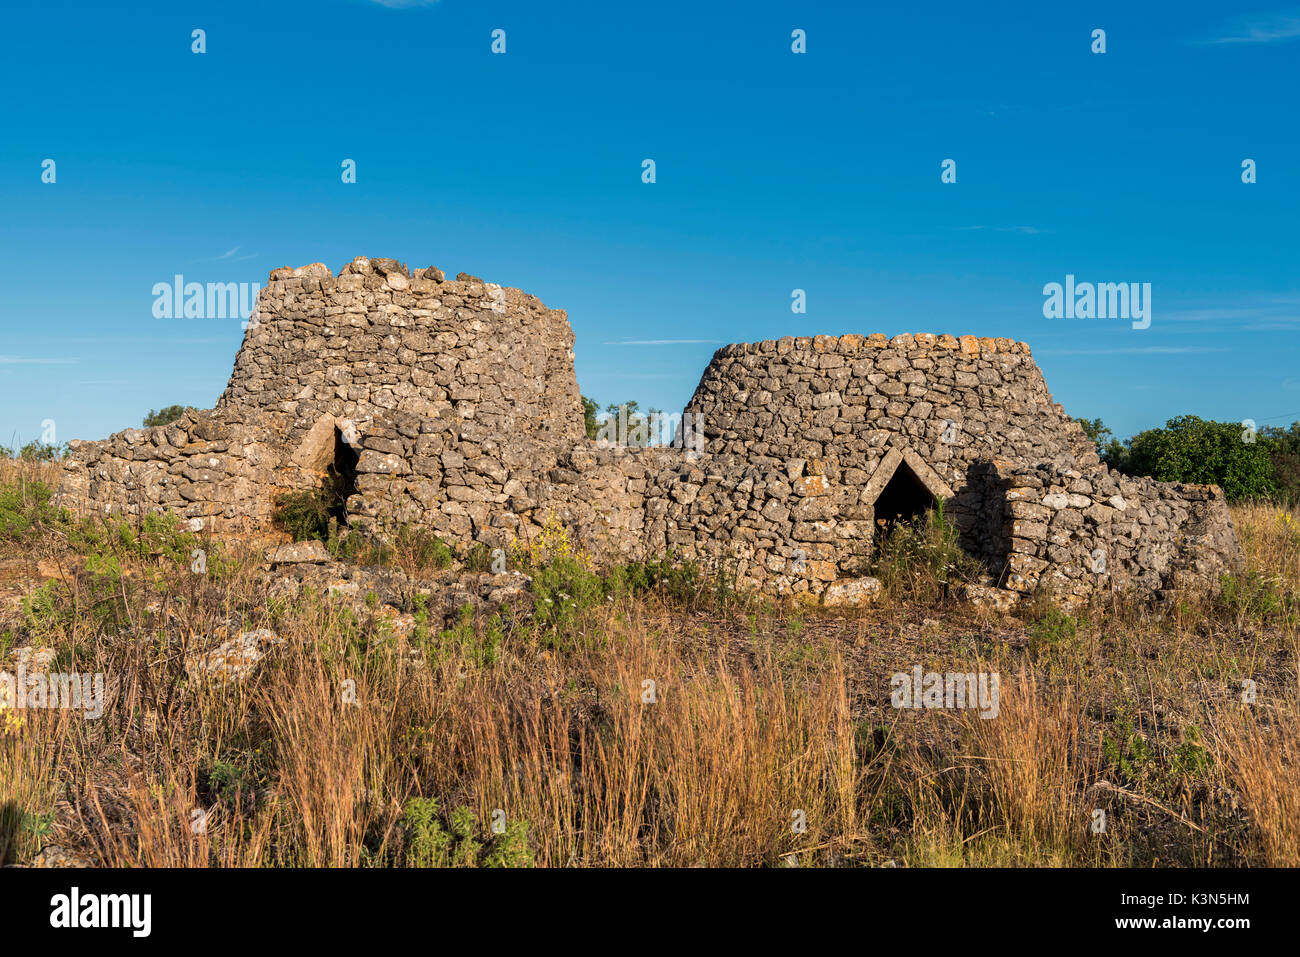 Casarano, province de Lecce, Pouilles, Salento, en Italie. Cabane en pierre sèche traditionnelle des Pouilles Banque D'Images